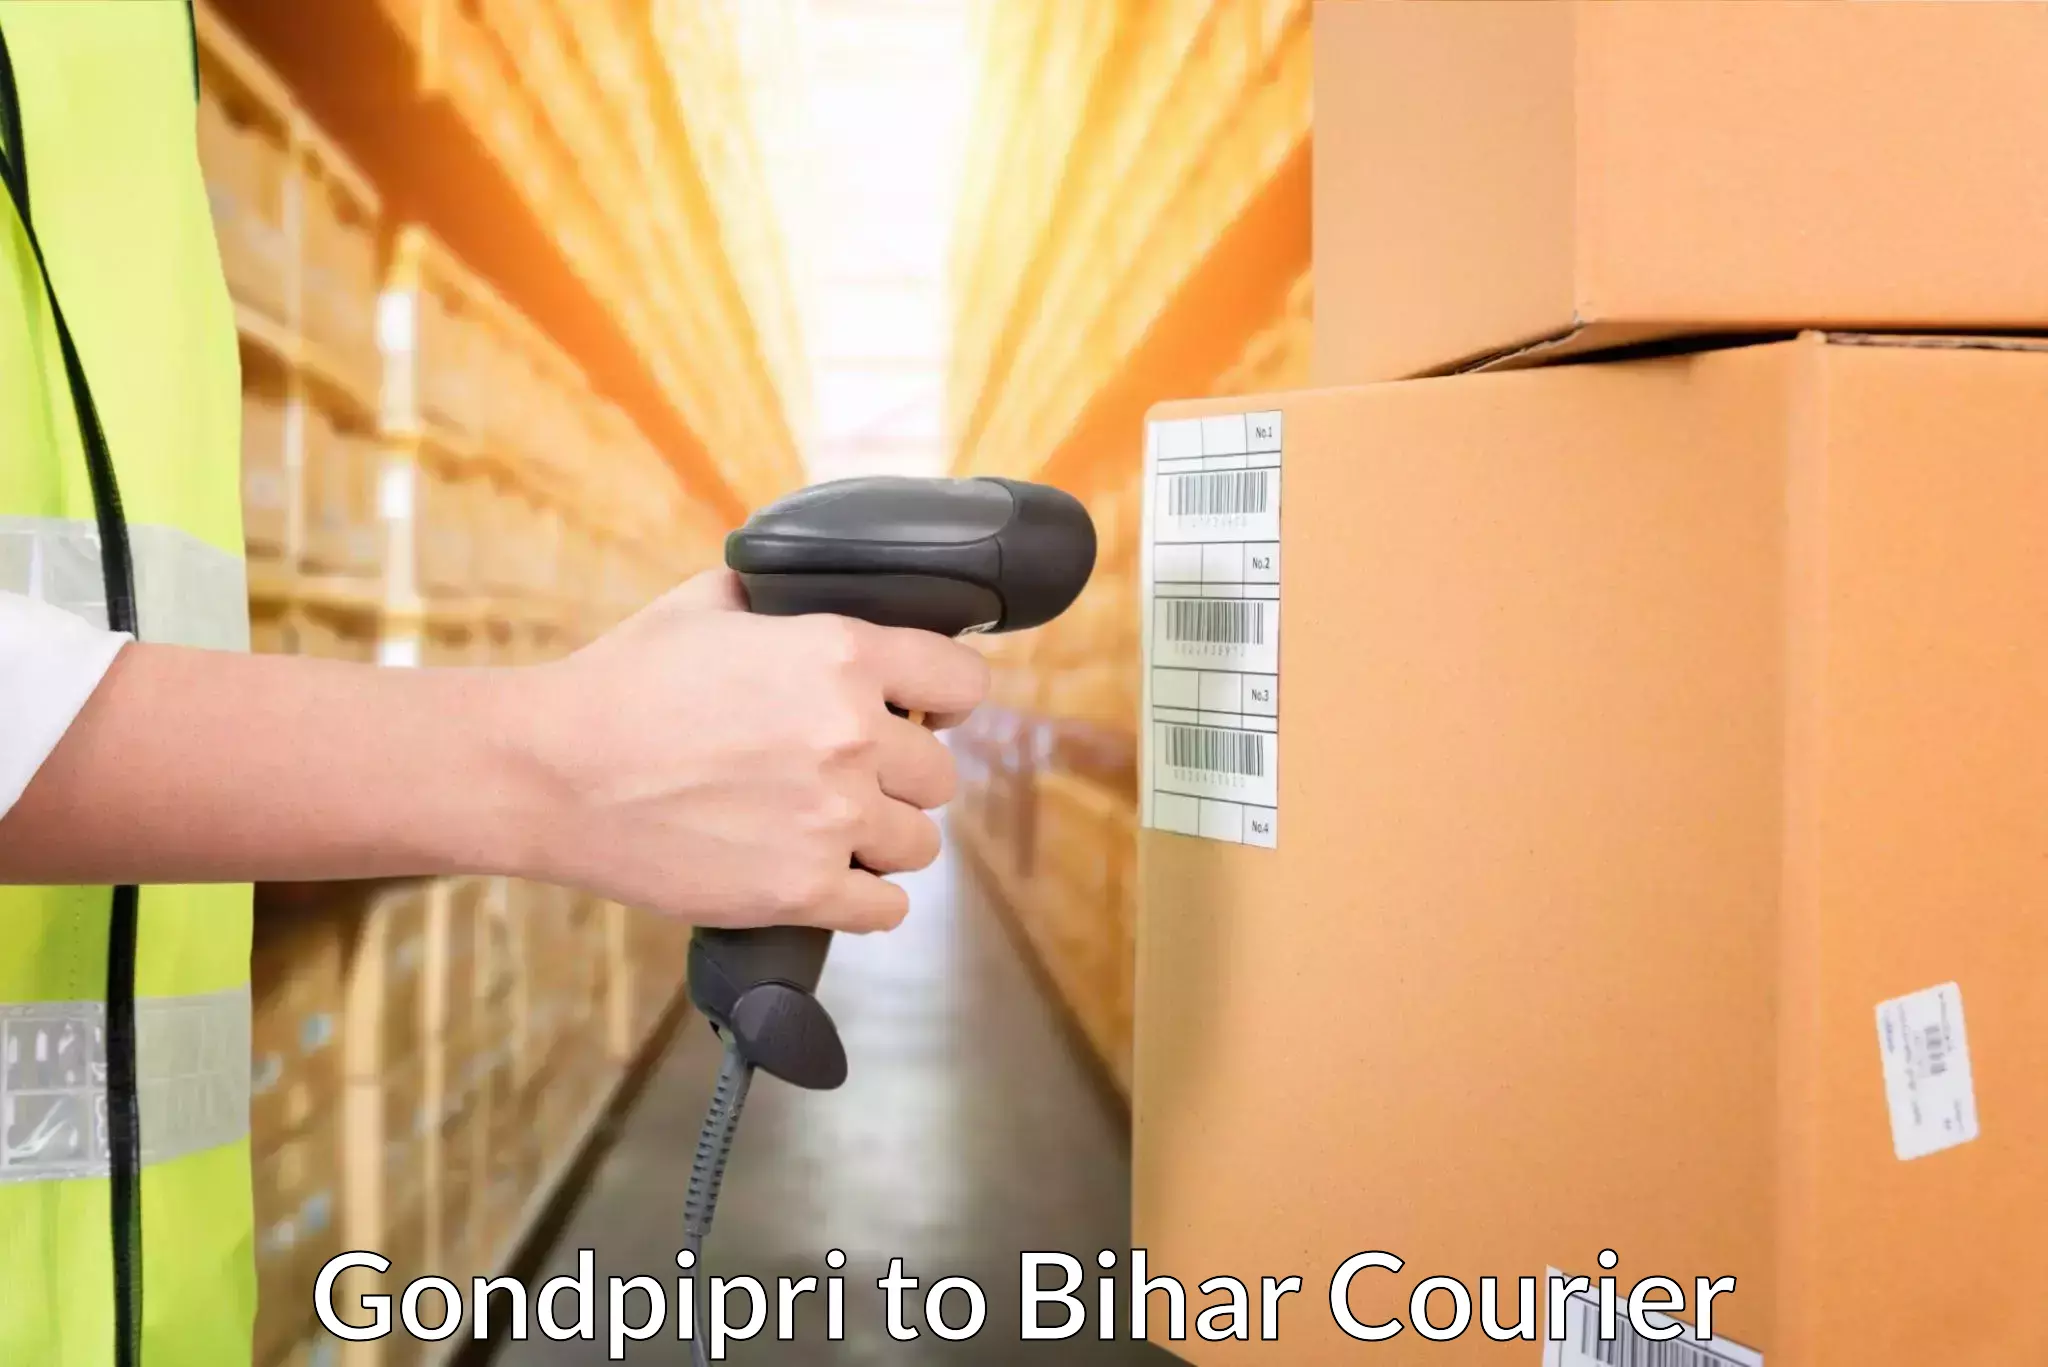 Local delivery service Gondpipri to Bihar